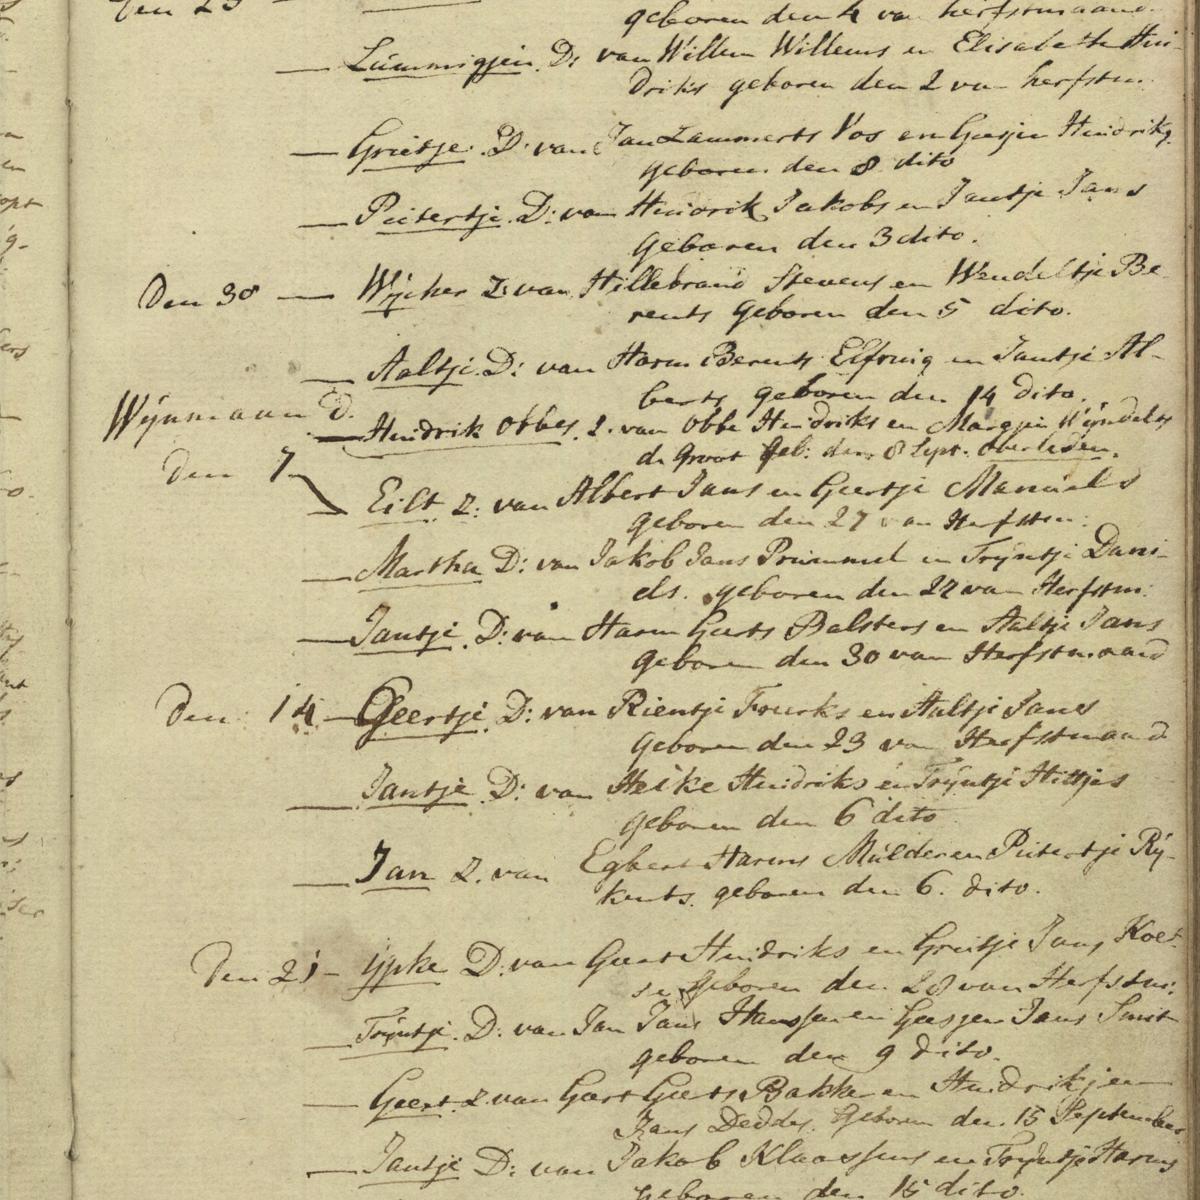 Baptisms, Kerkelijke Gemeente Veendam, 1810-09-09 until 1810-10-21